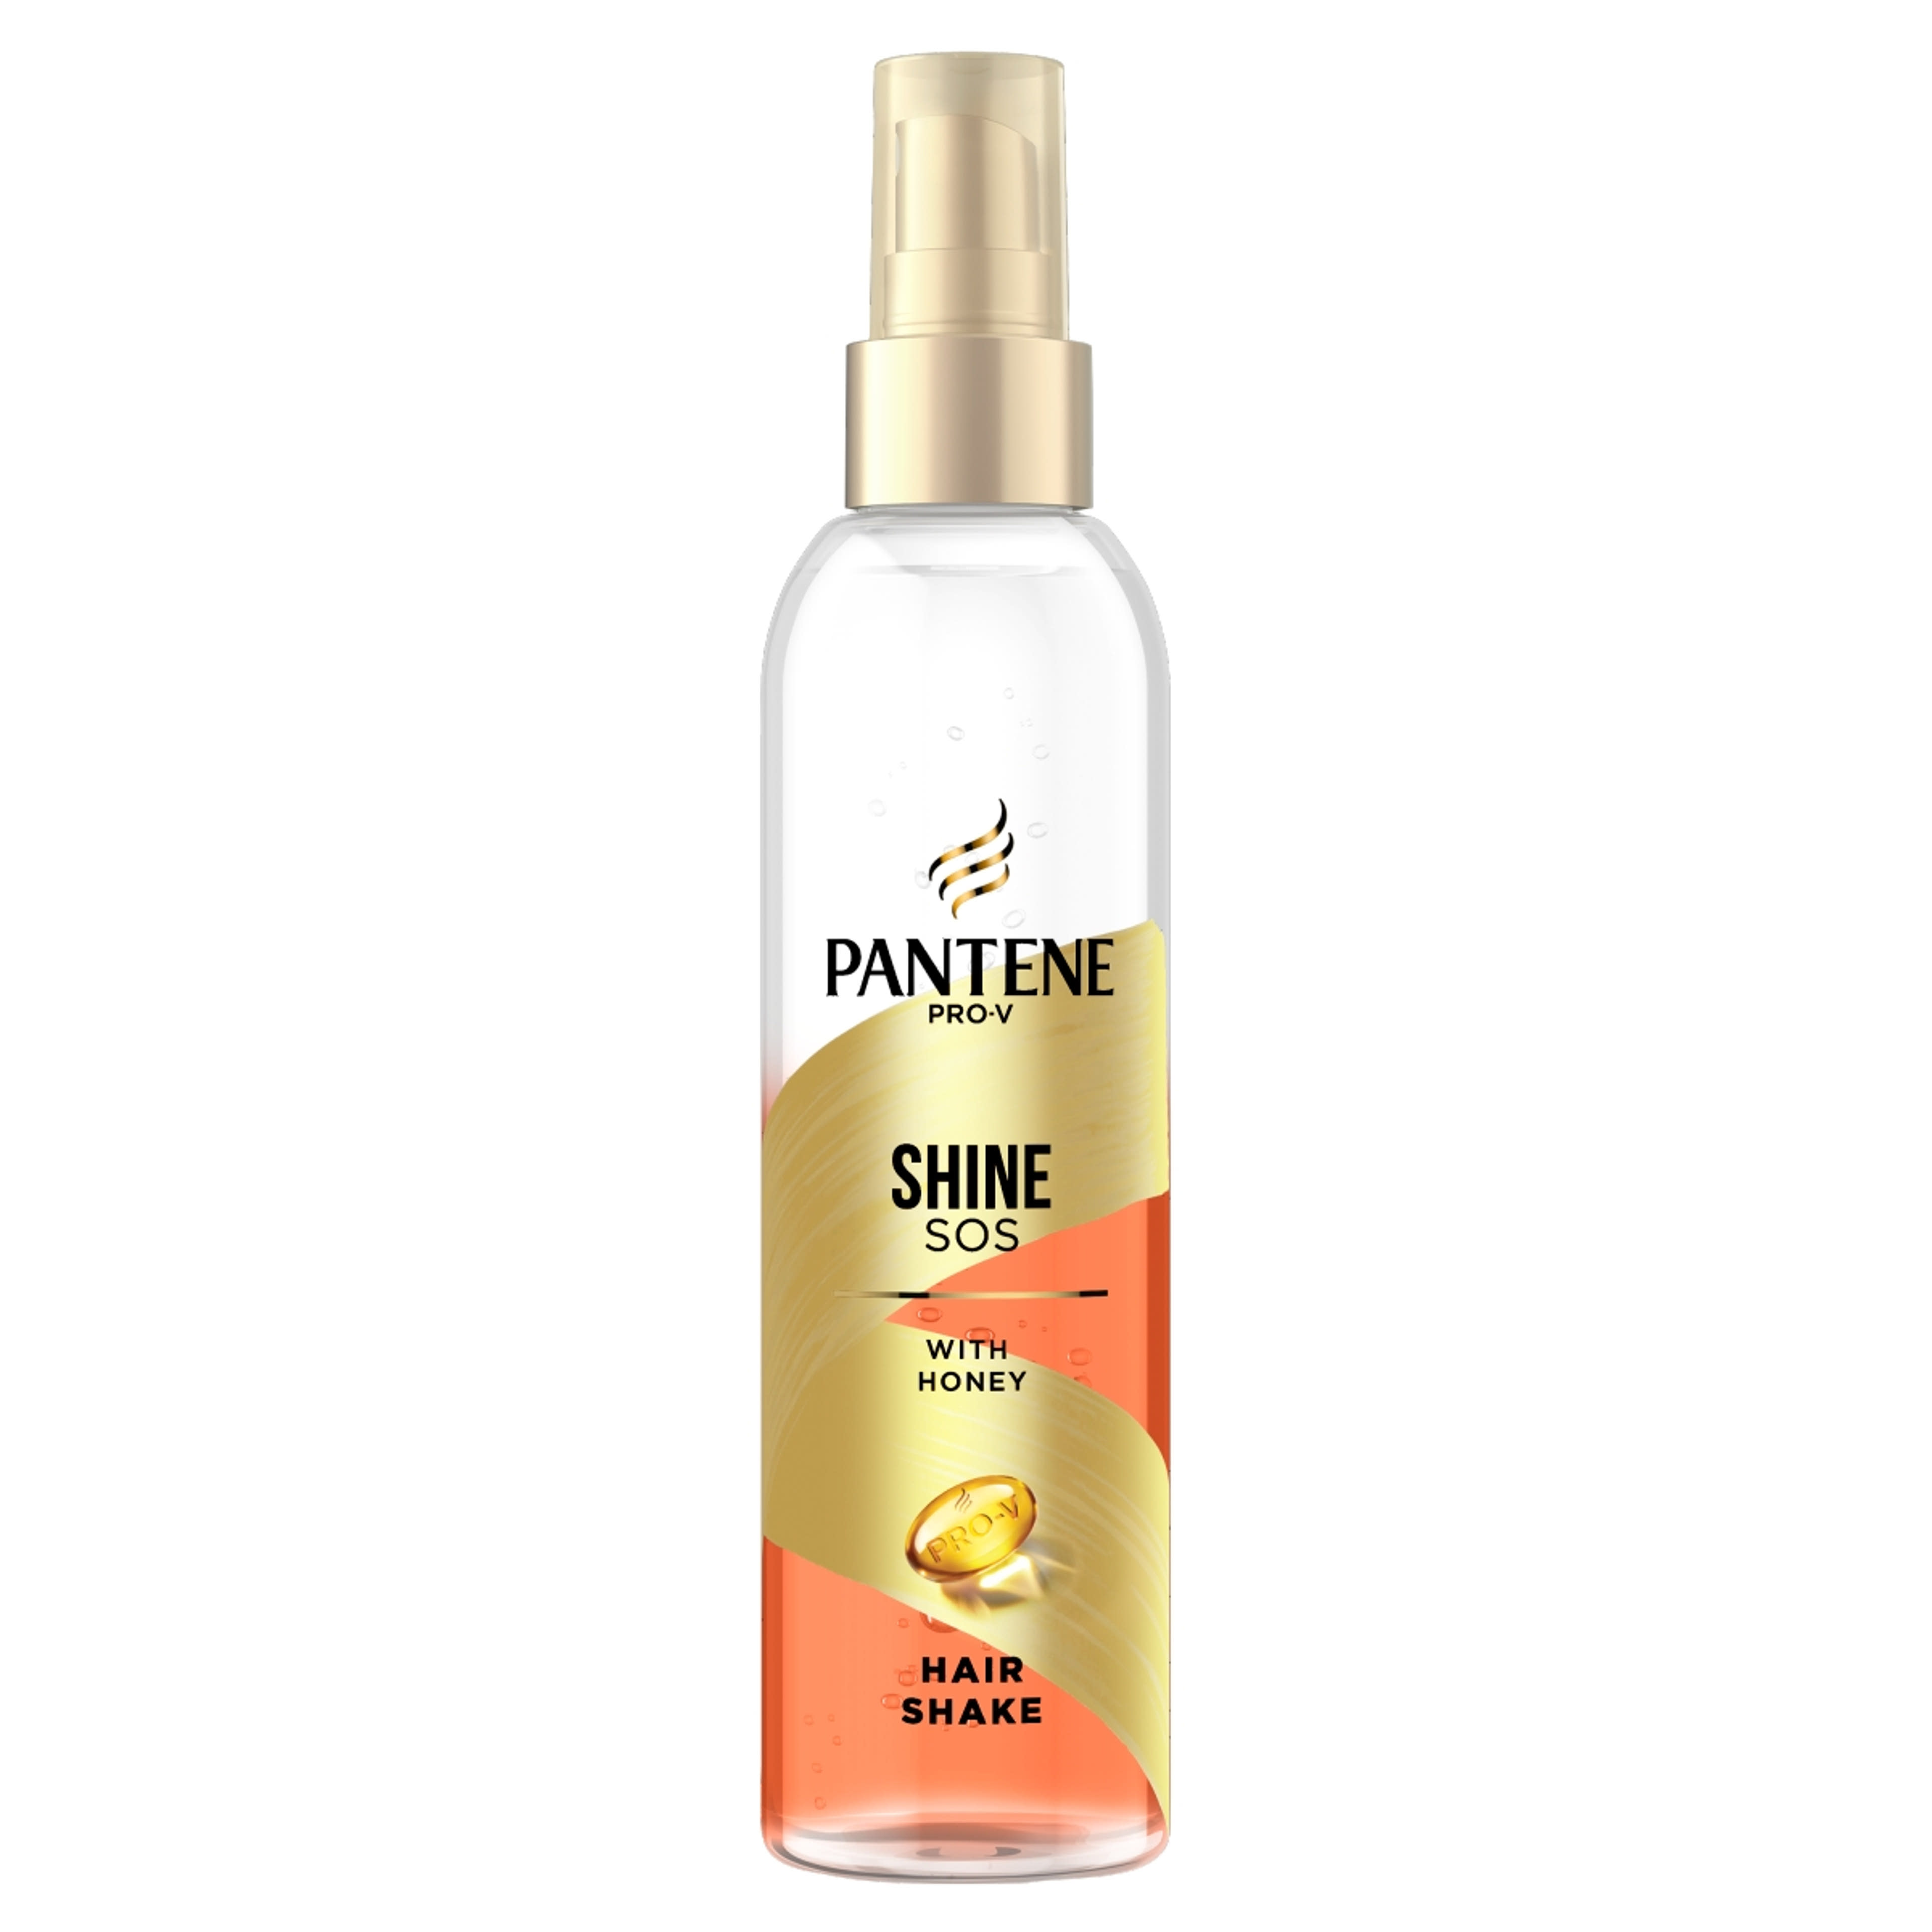 Pantene hair rescue shaker repair - 150 ml